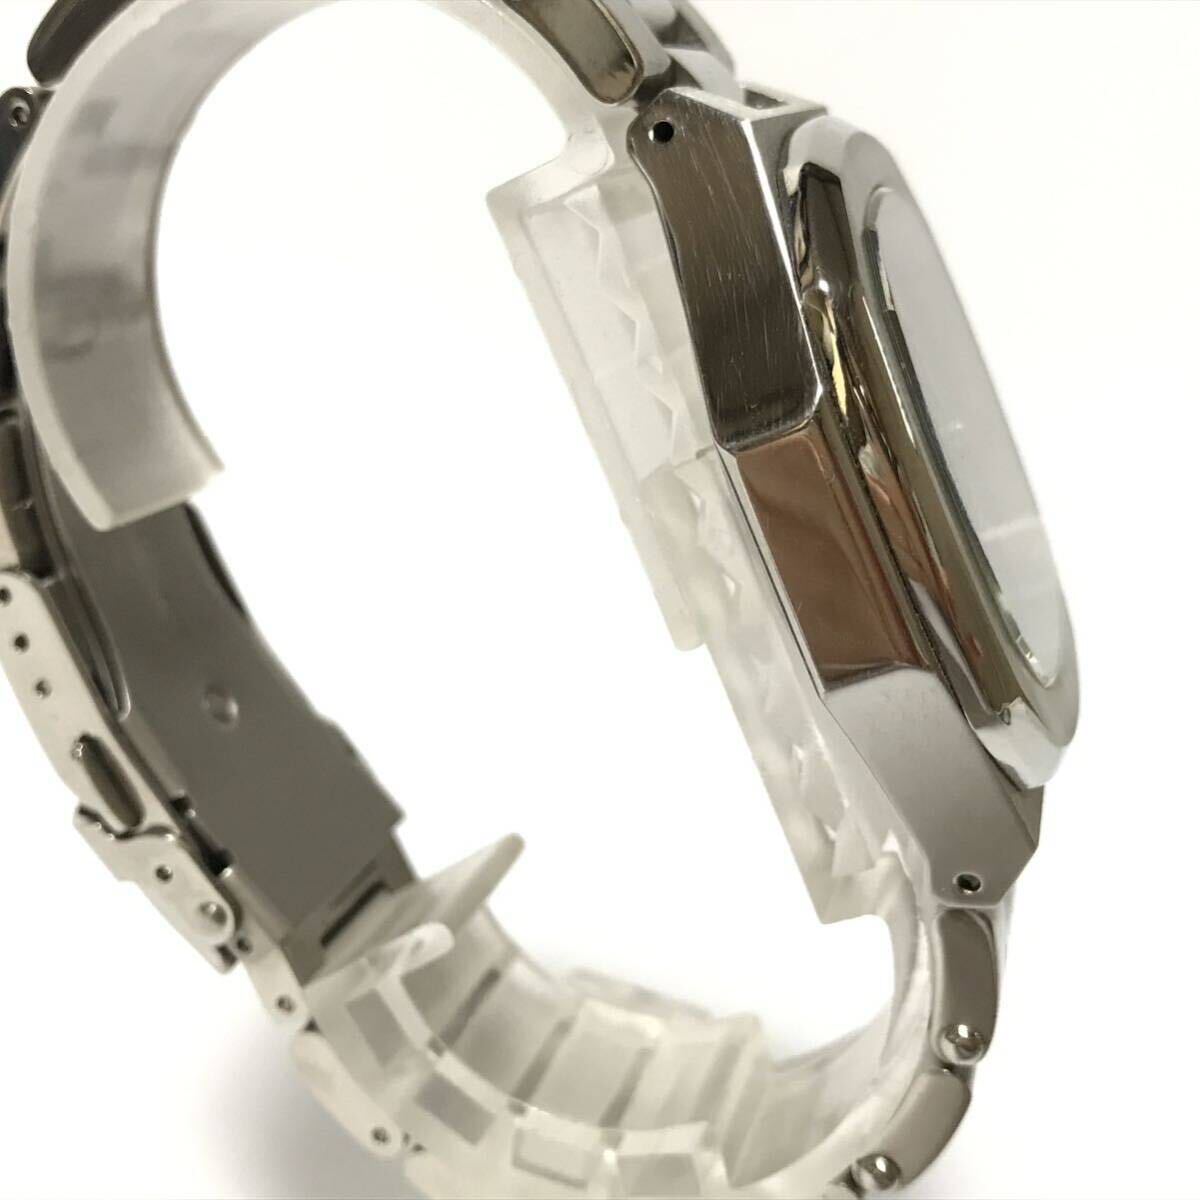  прекрасный товар TECHNOS Tecnos TBM620 мужские наручные часы кварц хронограф 